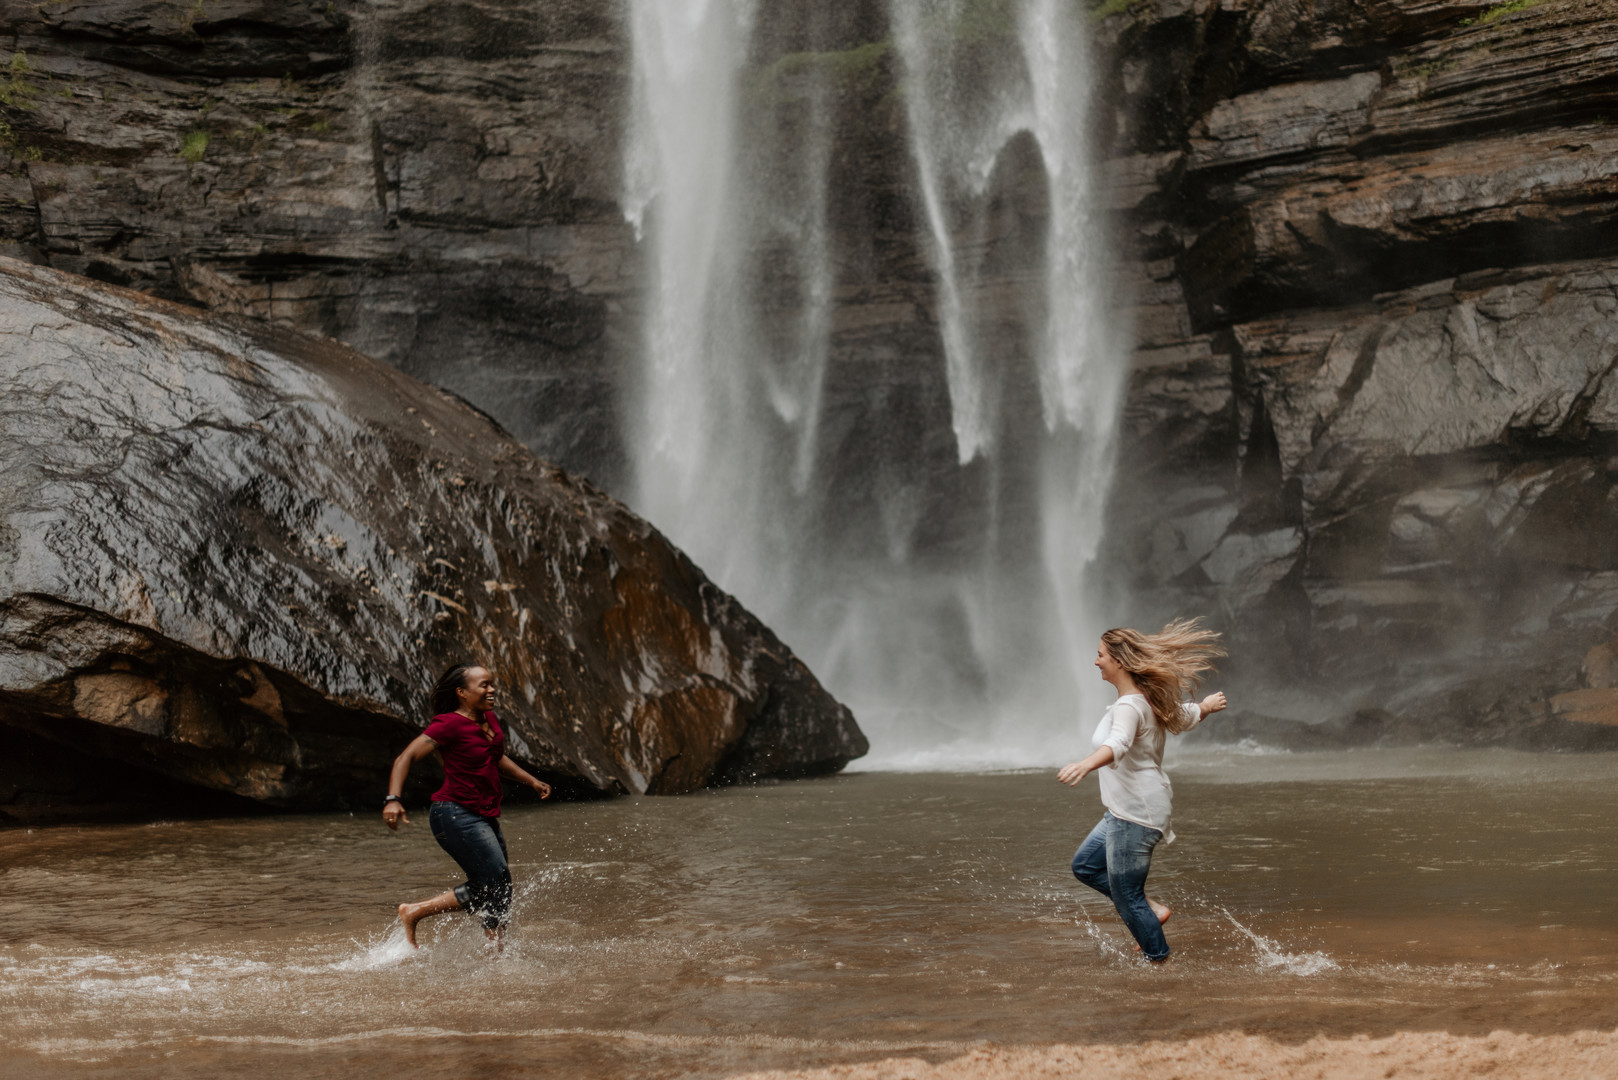 Waterfall adventure engagement photos at Toccoa Falls two brides fun run